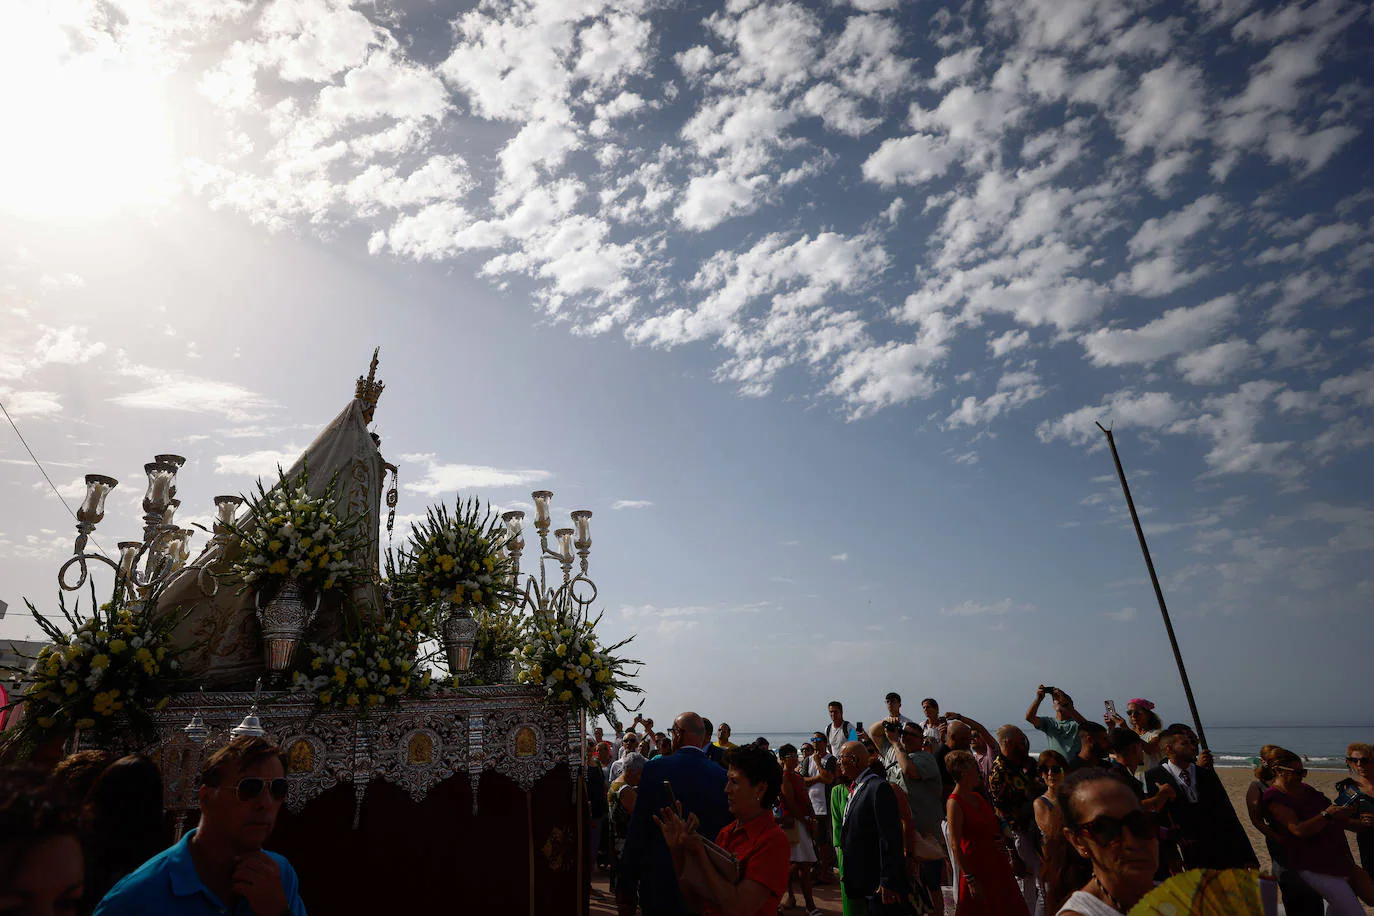 La devoción se desborda con la festividad de la Virgen del Carmen, patrona de las gentes de la mar